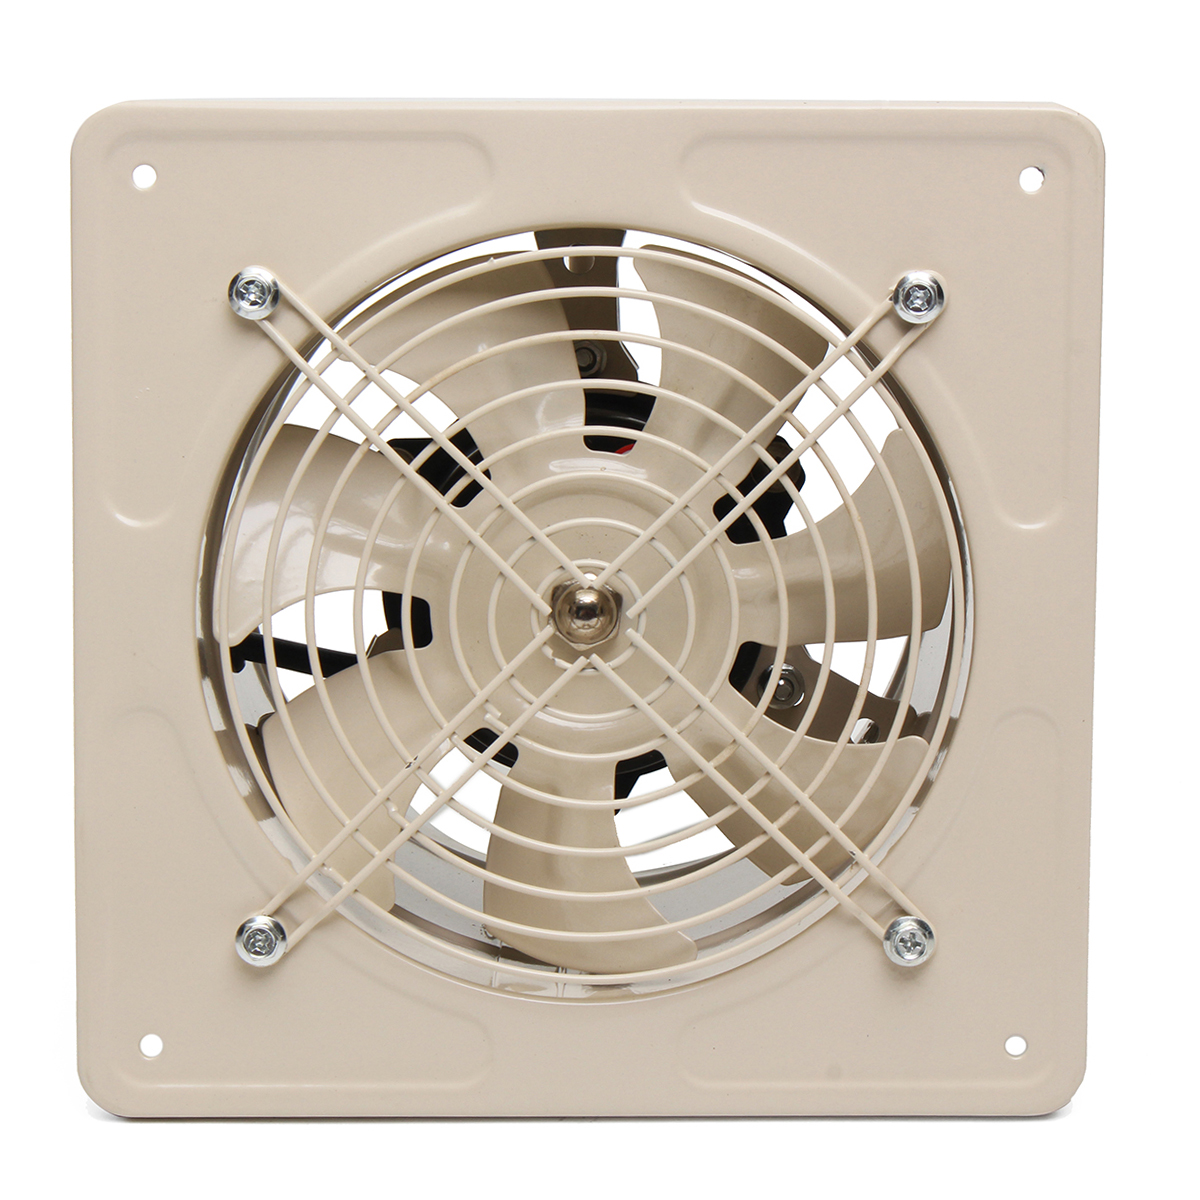 220V-40W-Ventilation-Fan-6-Inch-Wall-Mounted-Window-Exhaust-Fan-Home-Bathroom-Garage-Air-Vent-Fan-1388636-7